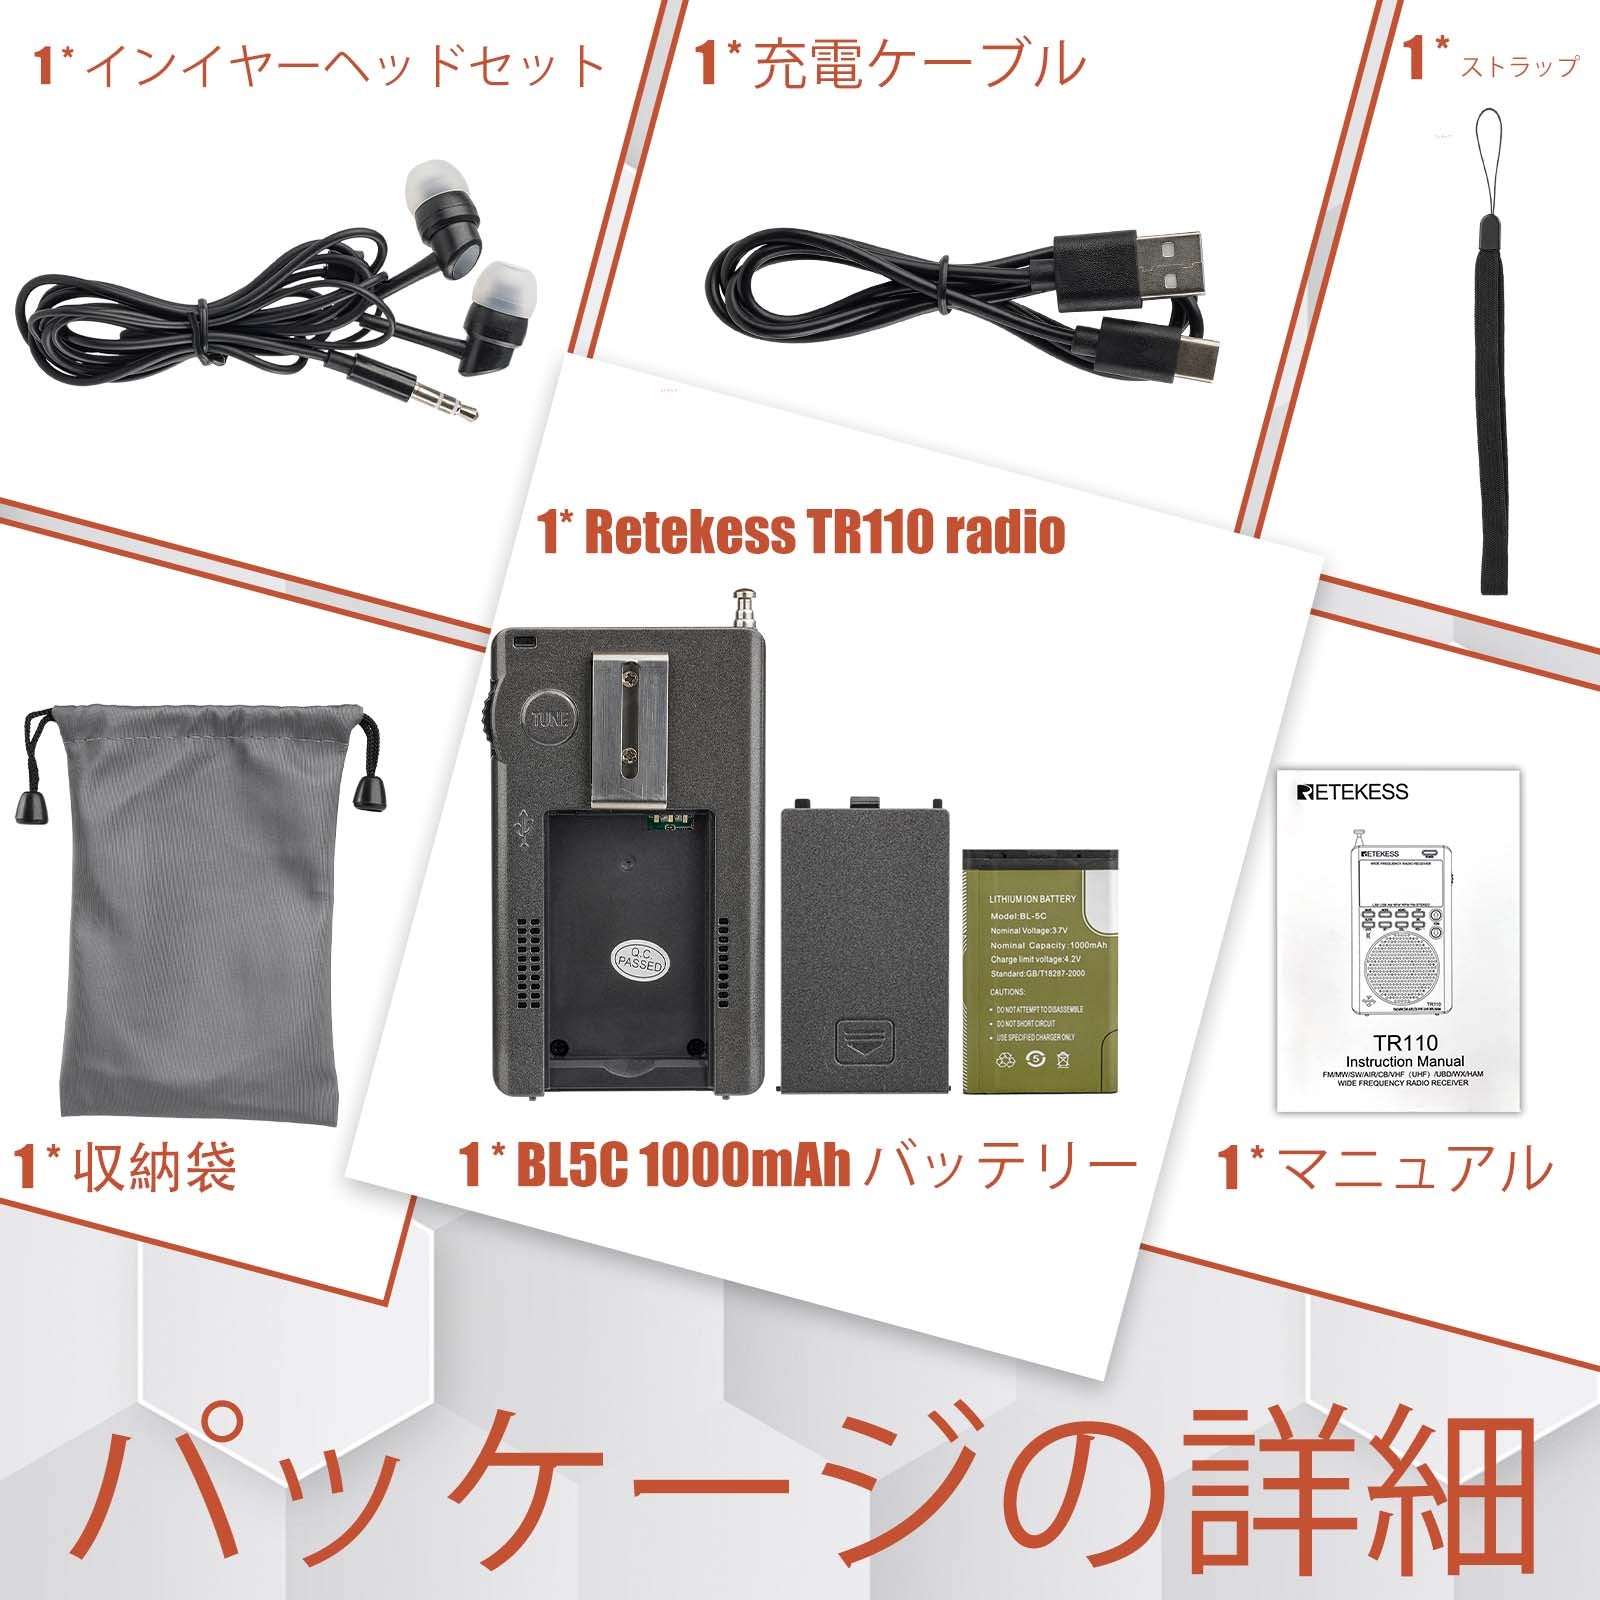 Retekess TR110ラジオ、BCLラジオ、アマチュア無線愛好家向け 